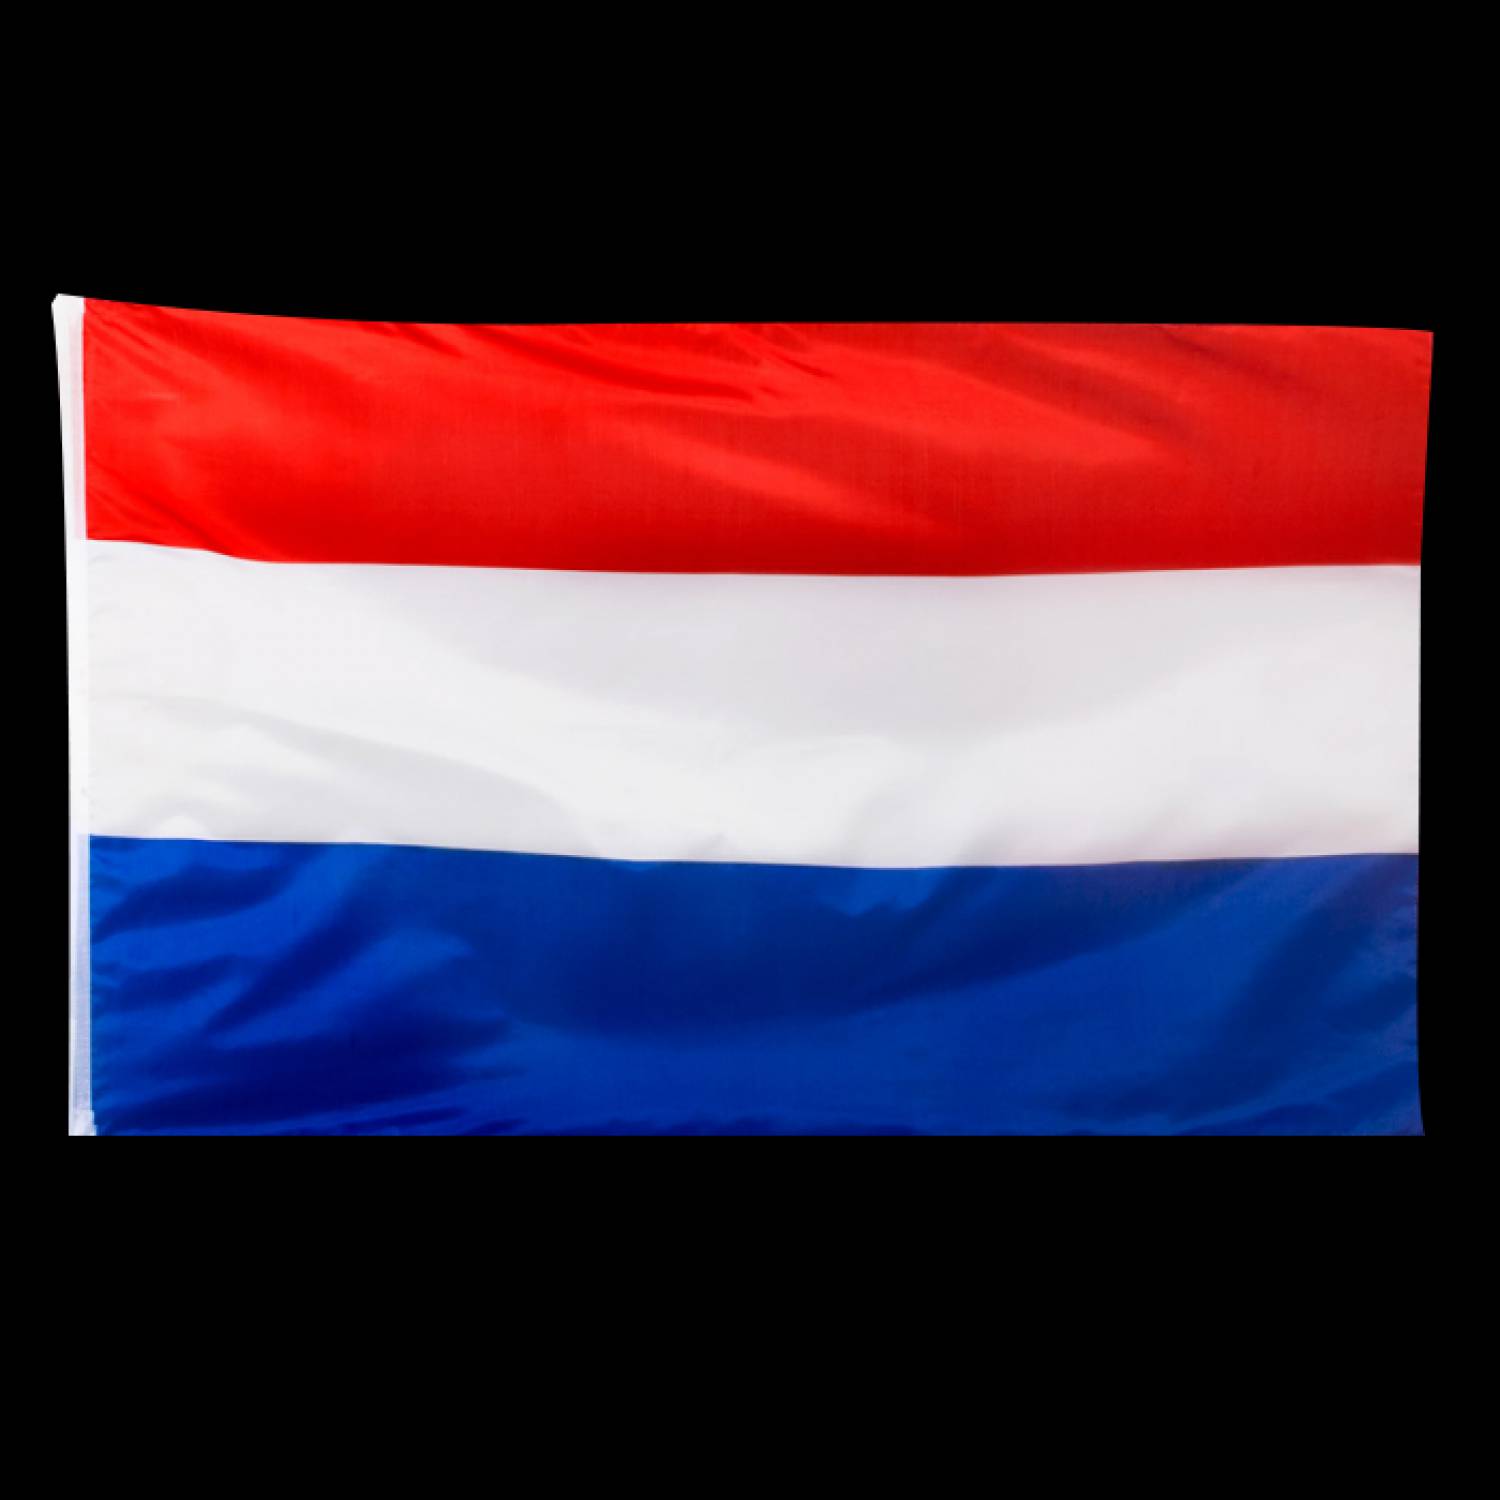 nederlandse vlag 150cm x 90cm